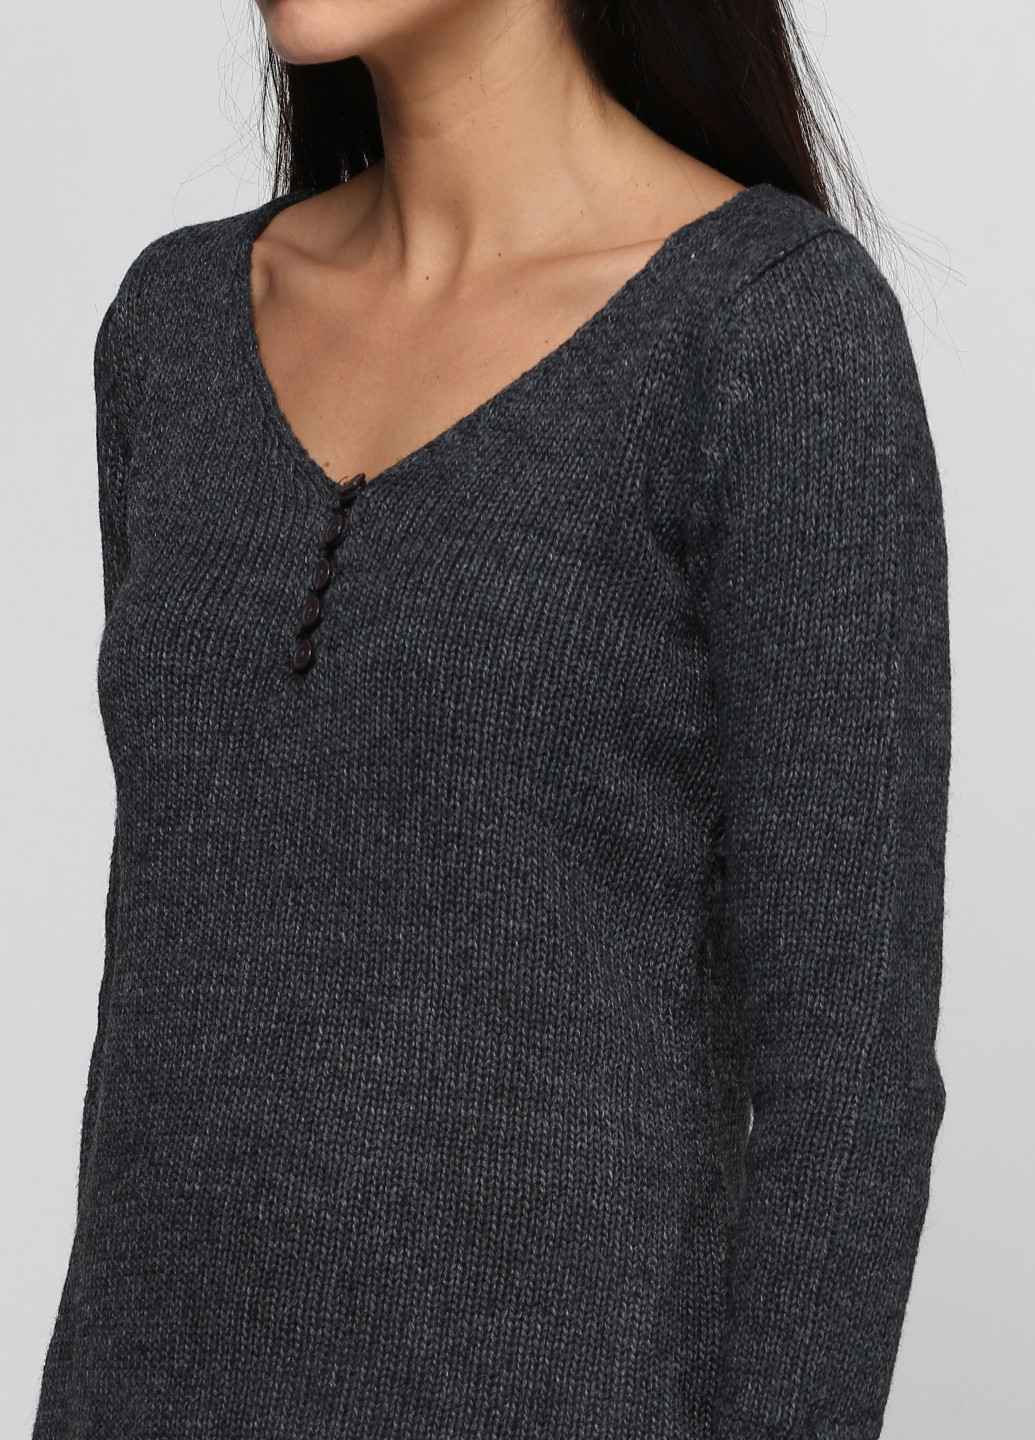 Грифельно-серый демисезонный пуловер пуловер DuDuBoBo